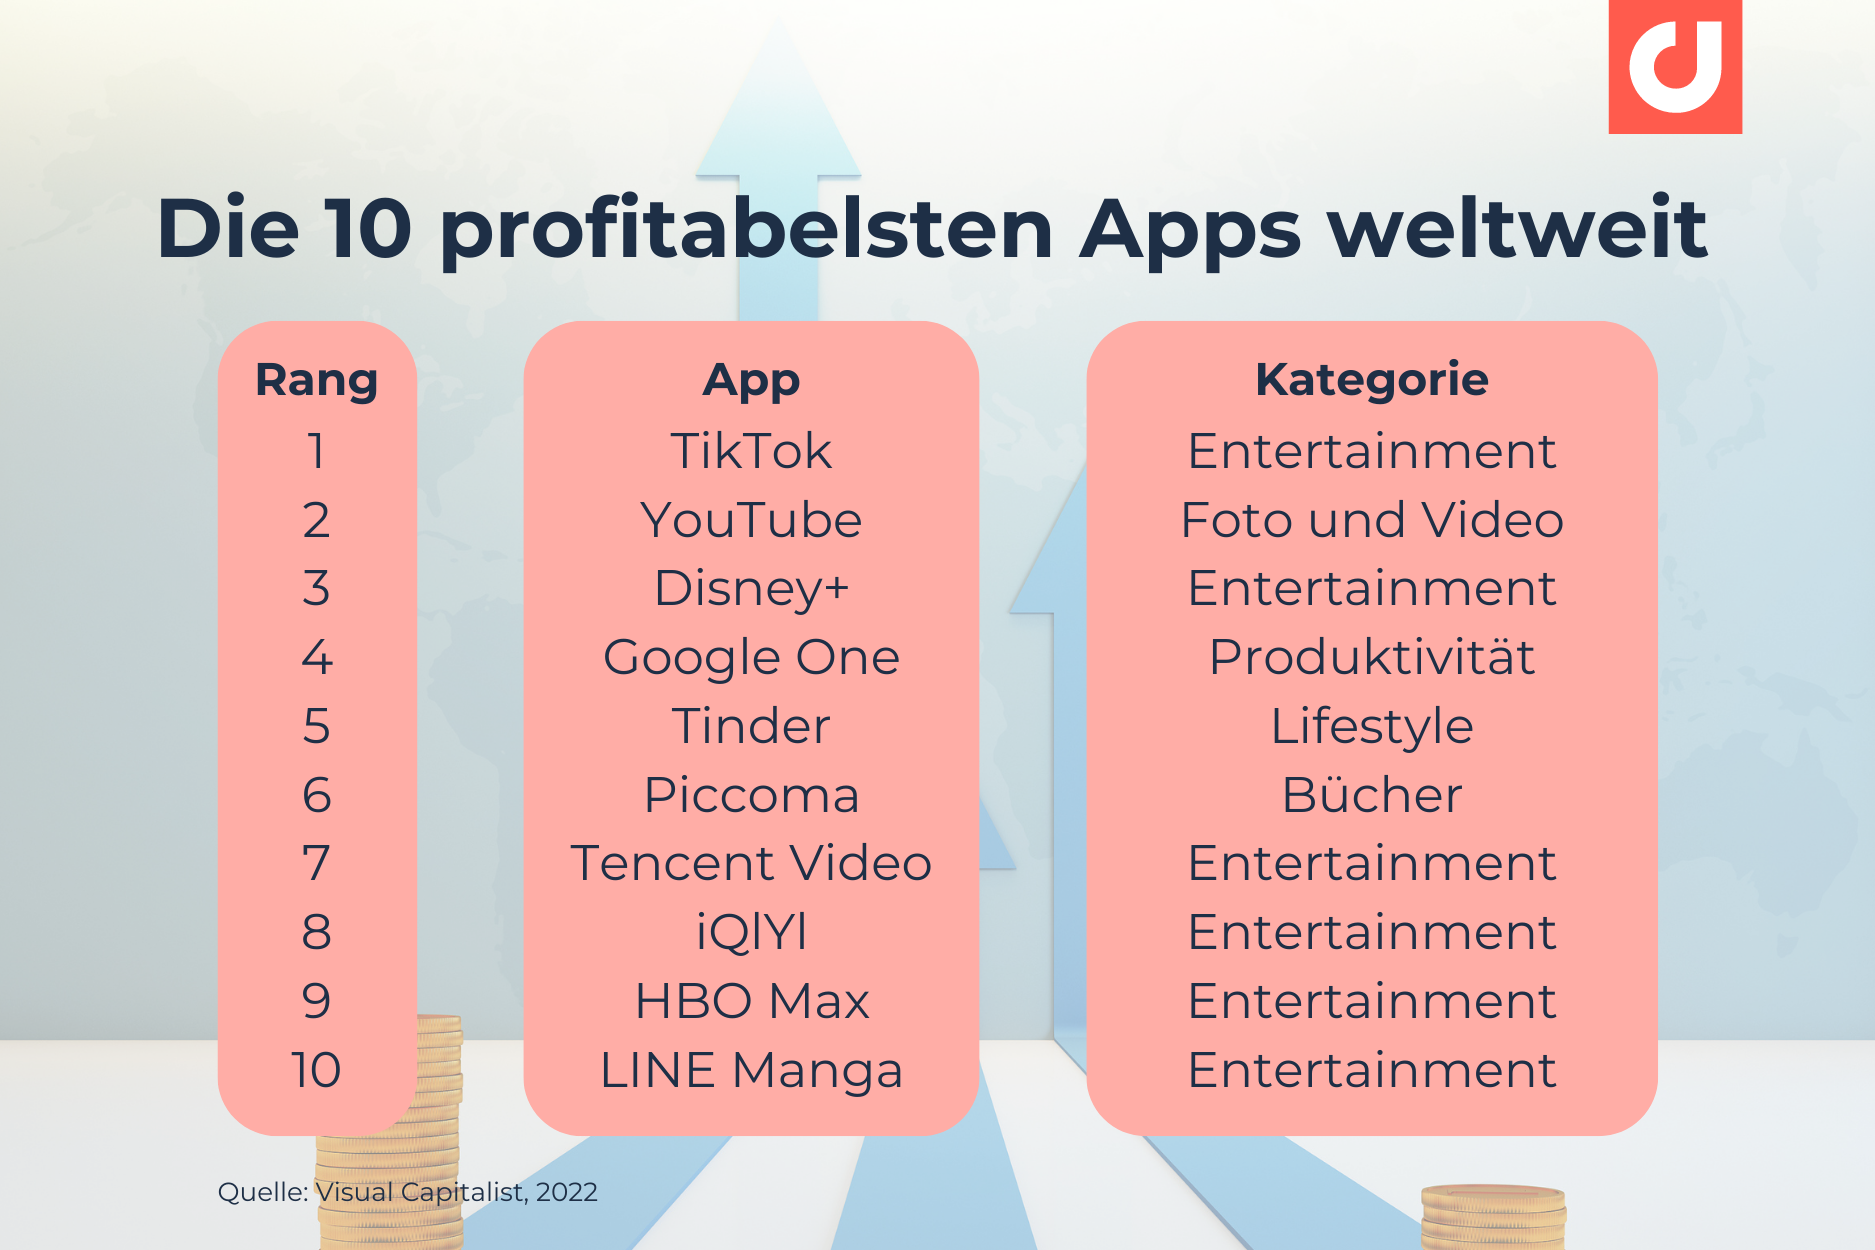 Die 10 profitabelsten Apps weltweit